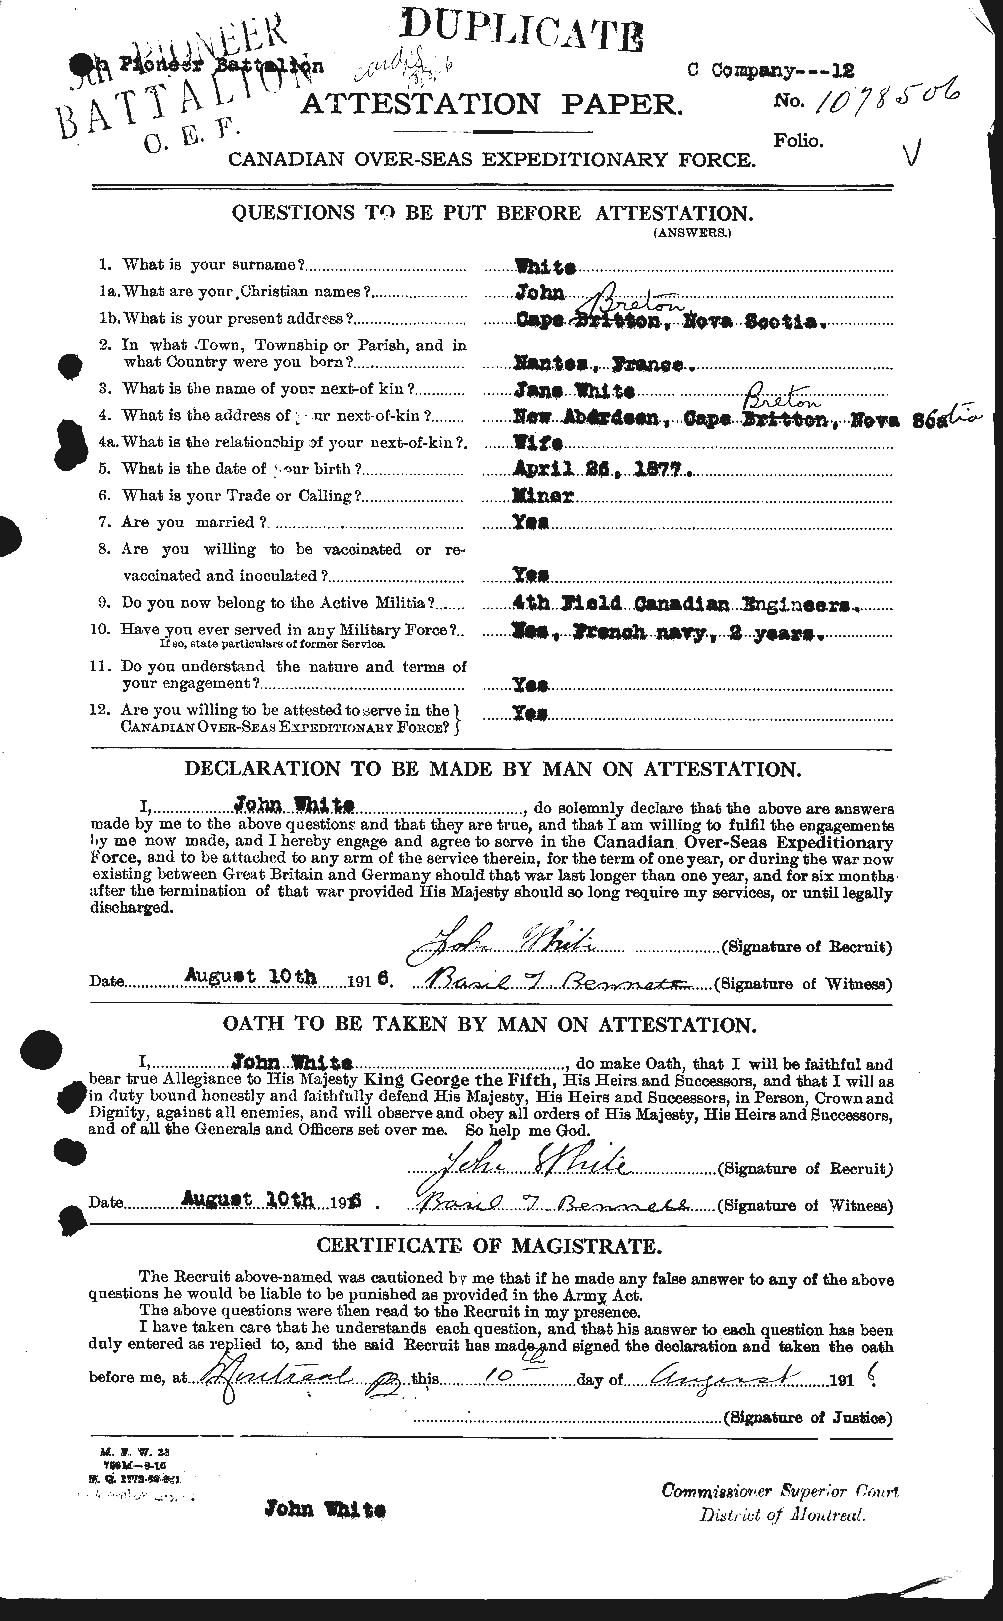 Dossiers du Personnel de la Première Guerre mondiale - CEC 671498a